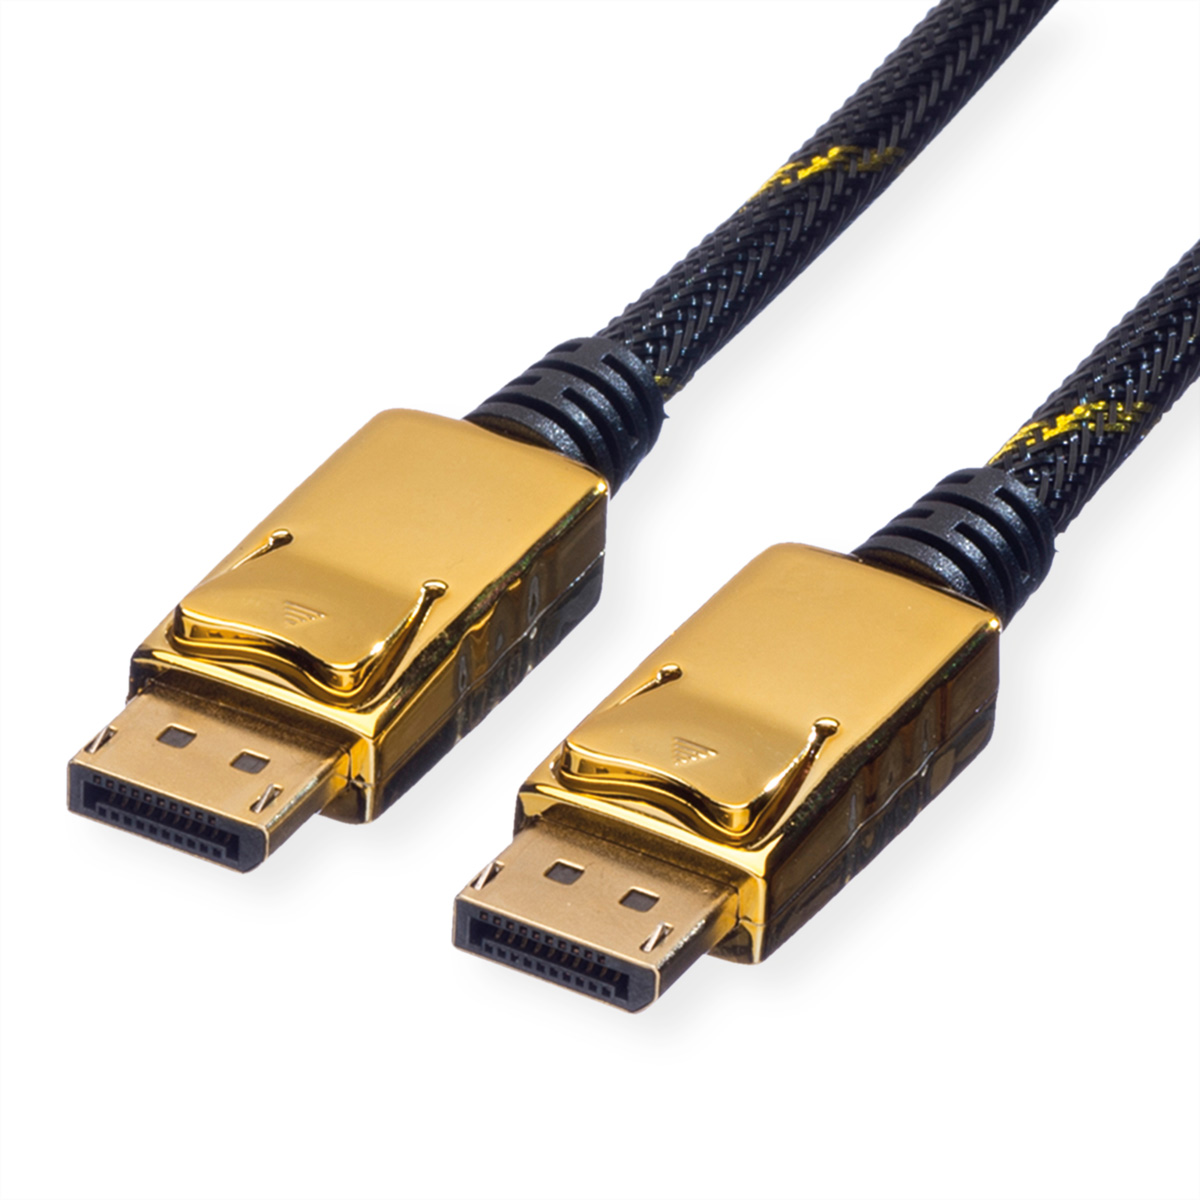 Kabel, ST - GOLD DP DisplayPort ROLINE 1 DisplayPort Kabel, ST, m